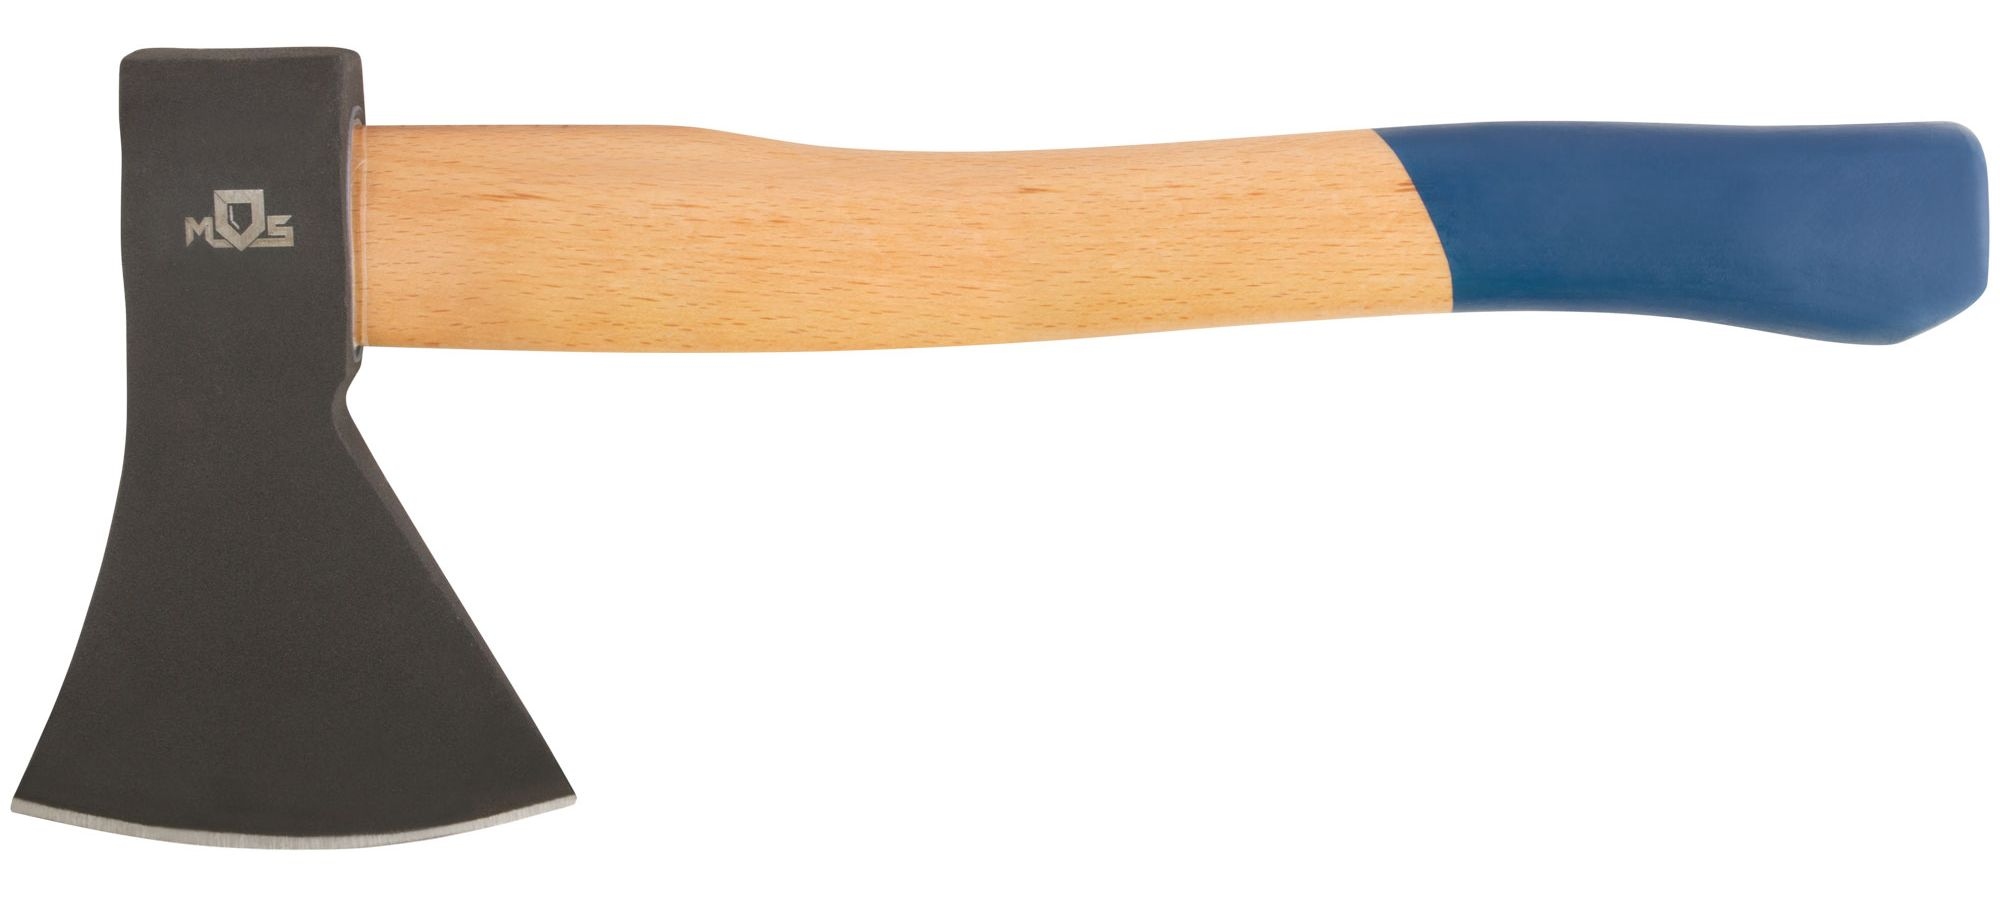 Топор MOS кованая инструментальная сталь, деревянная ручка 800 гр. 46002М топор кованая усиленная сталь деревянная полированная ручка 800 гр